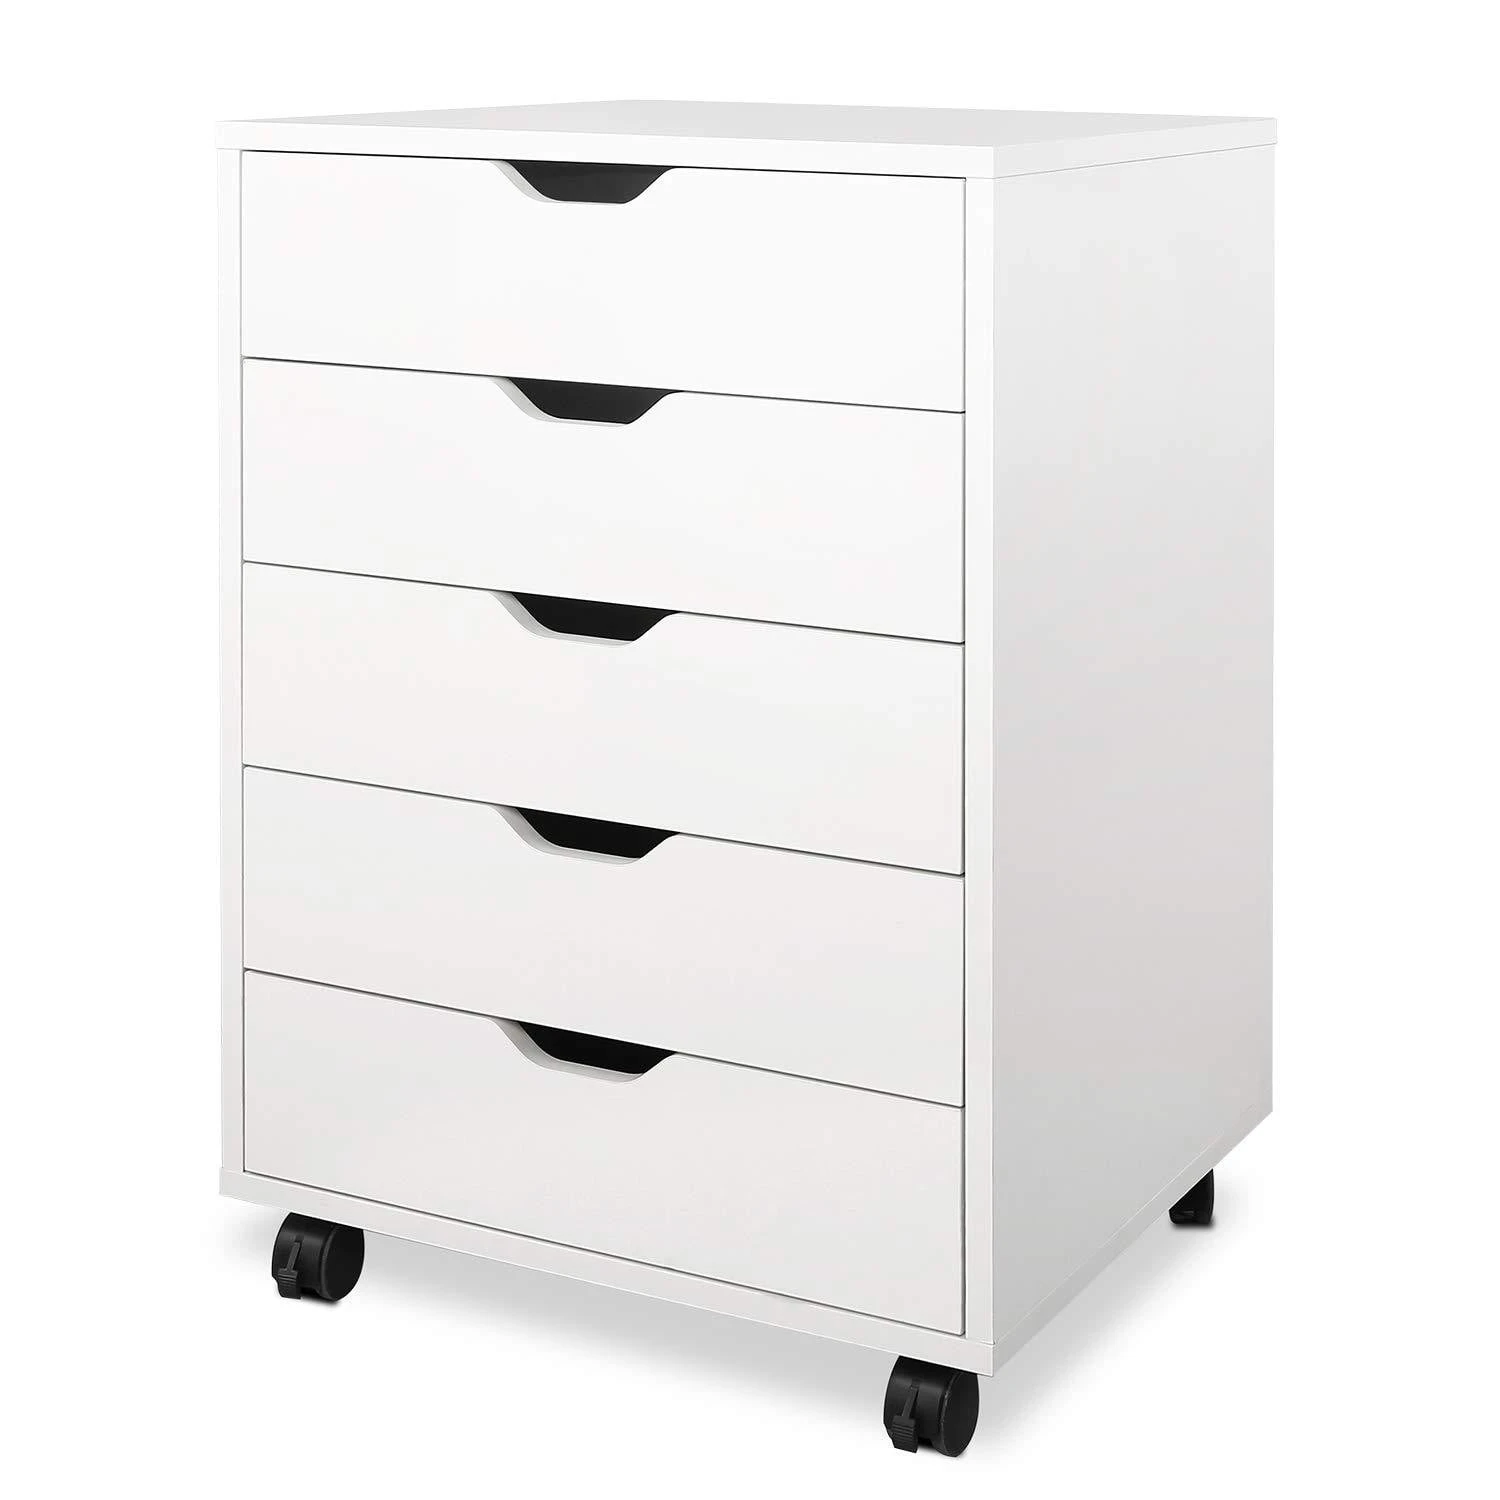 5 Drawers Chest, Wood Storage Dresser with Wheels, Craft Storage Organizer and Storage Drawer Office Drawer Unit - White